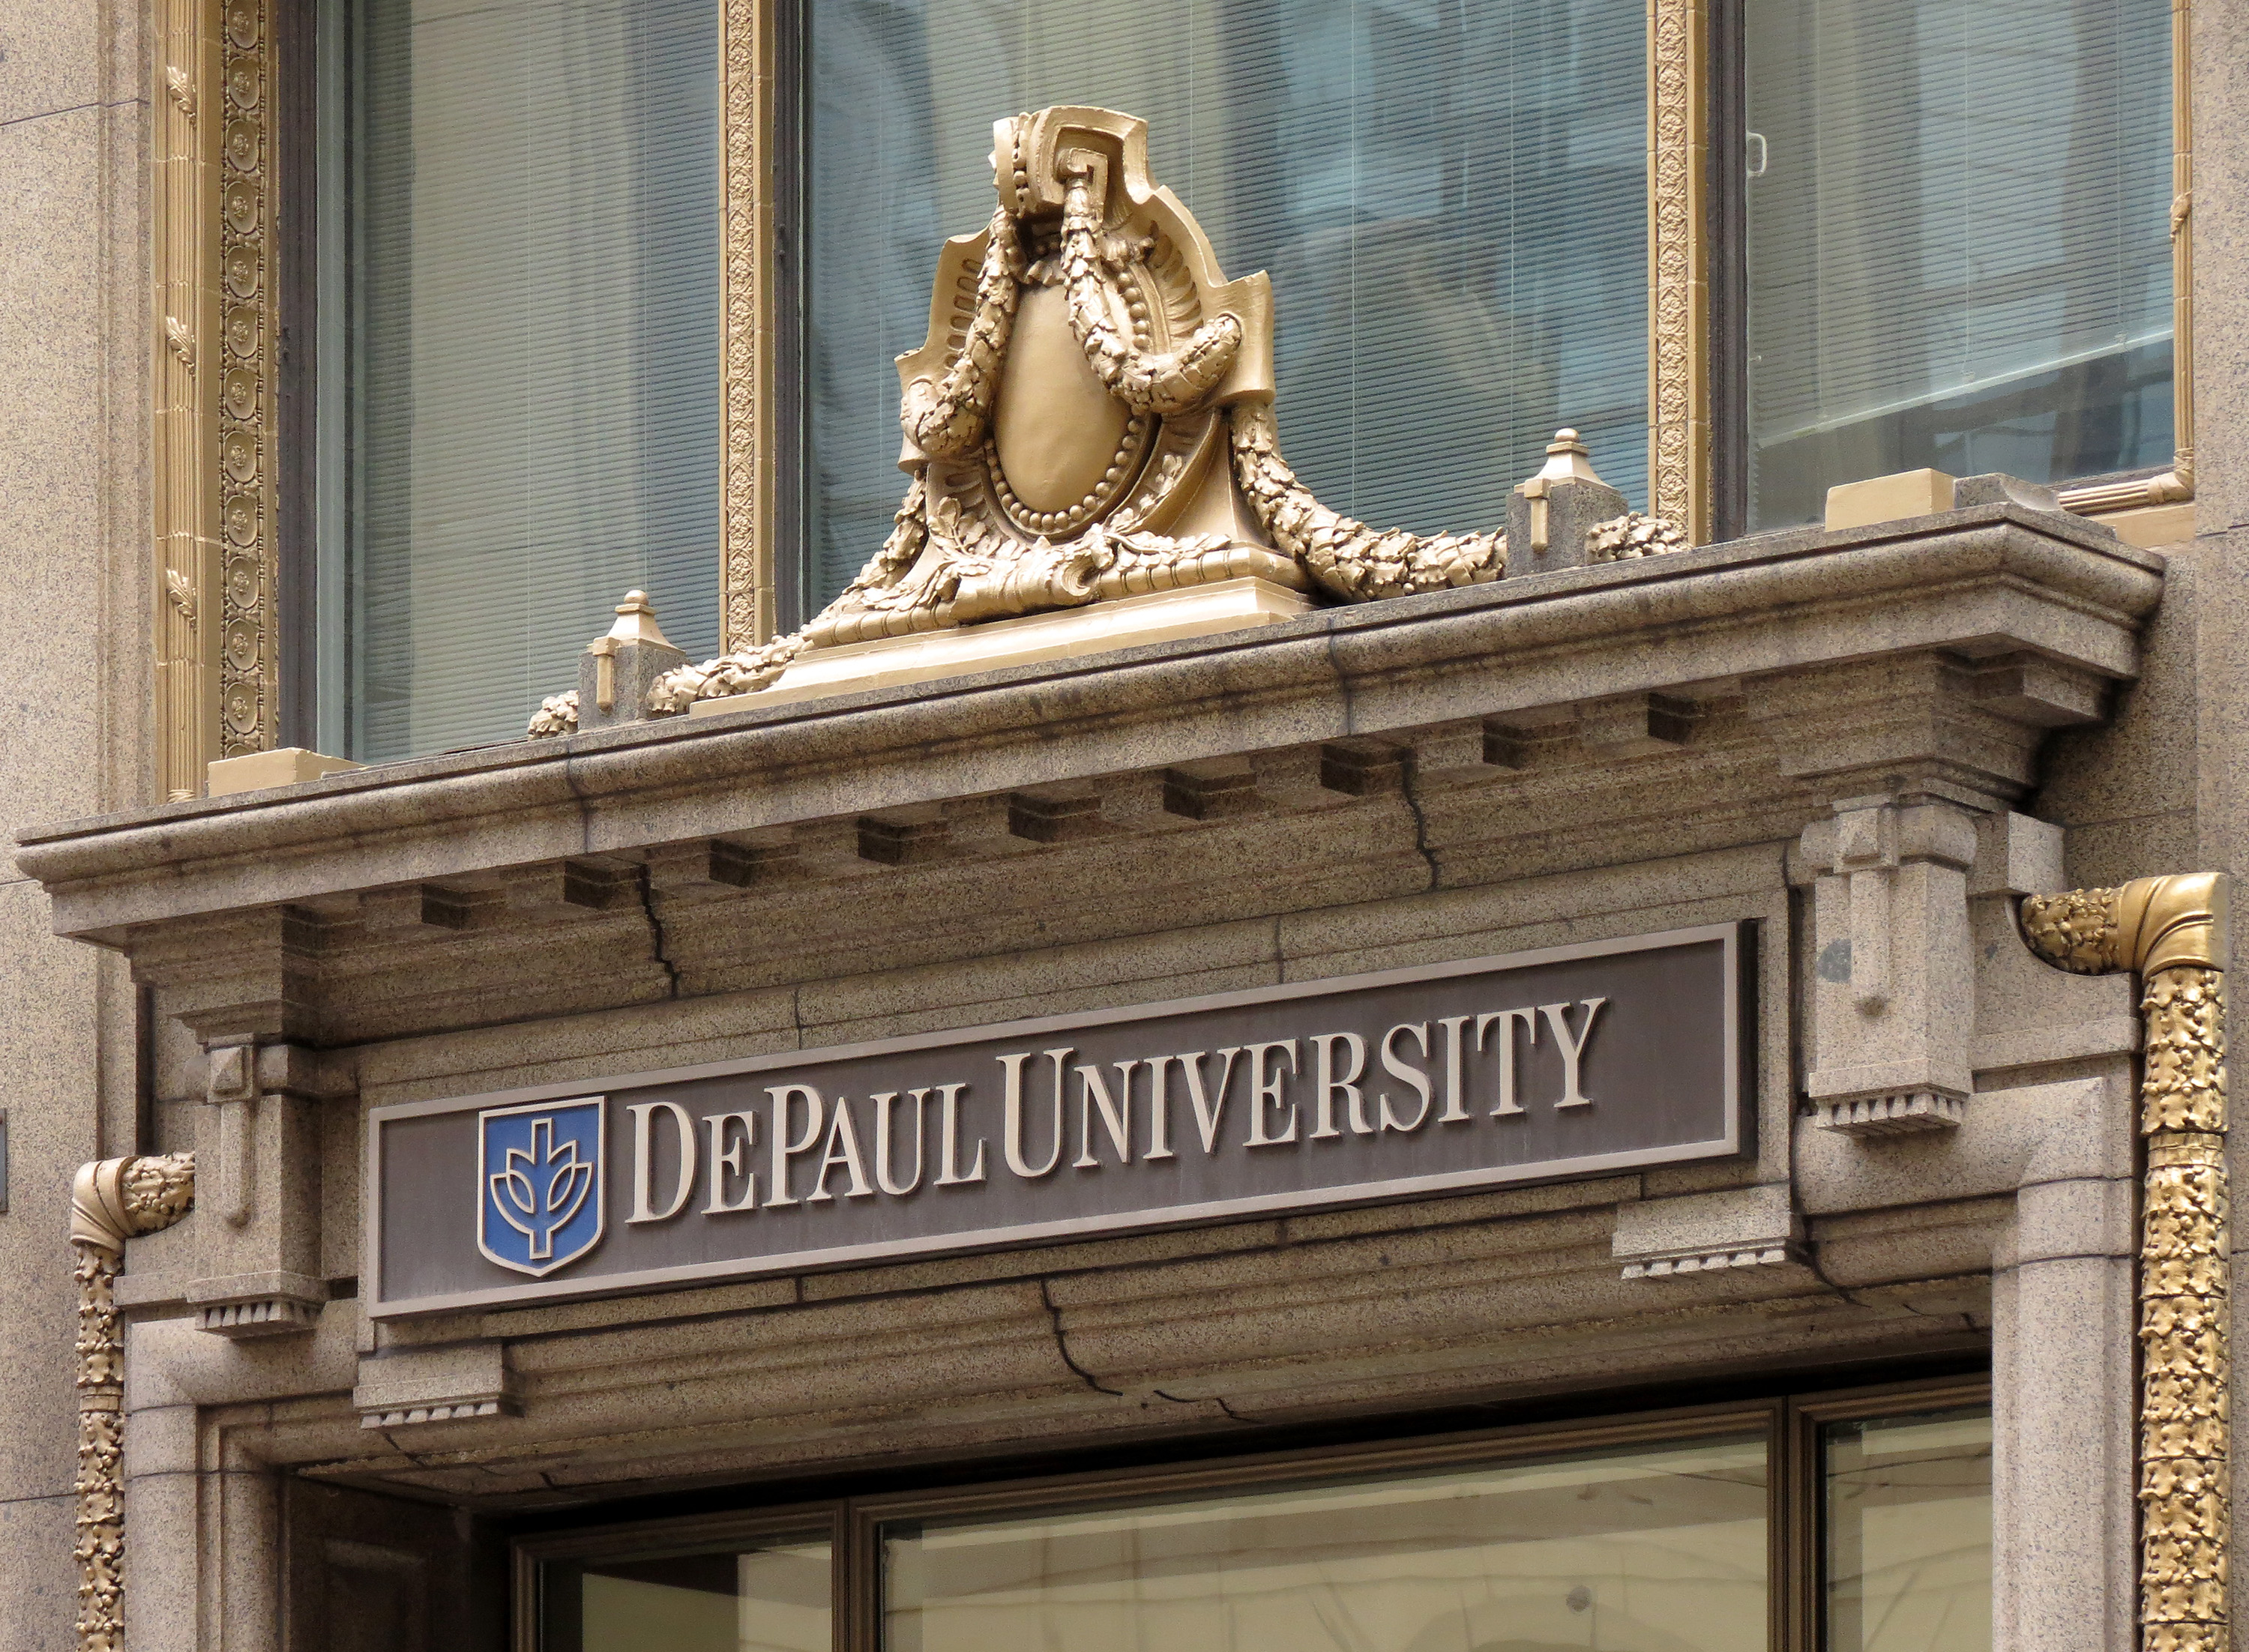 DePaul University Signage